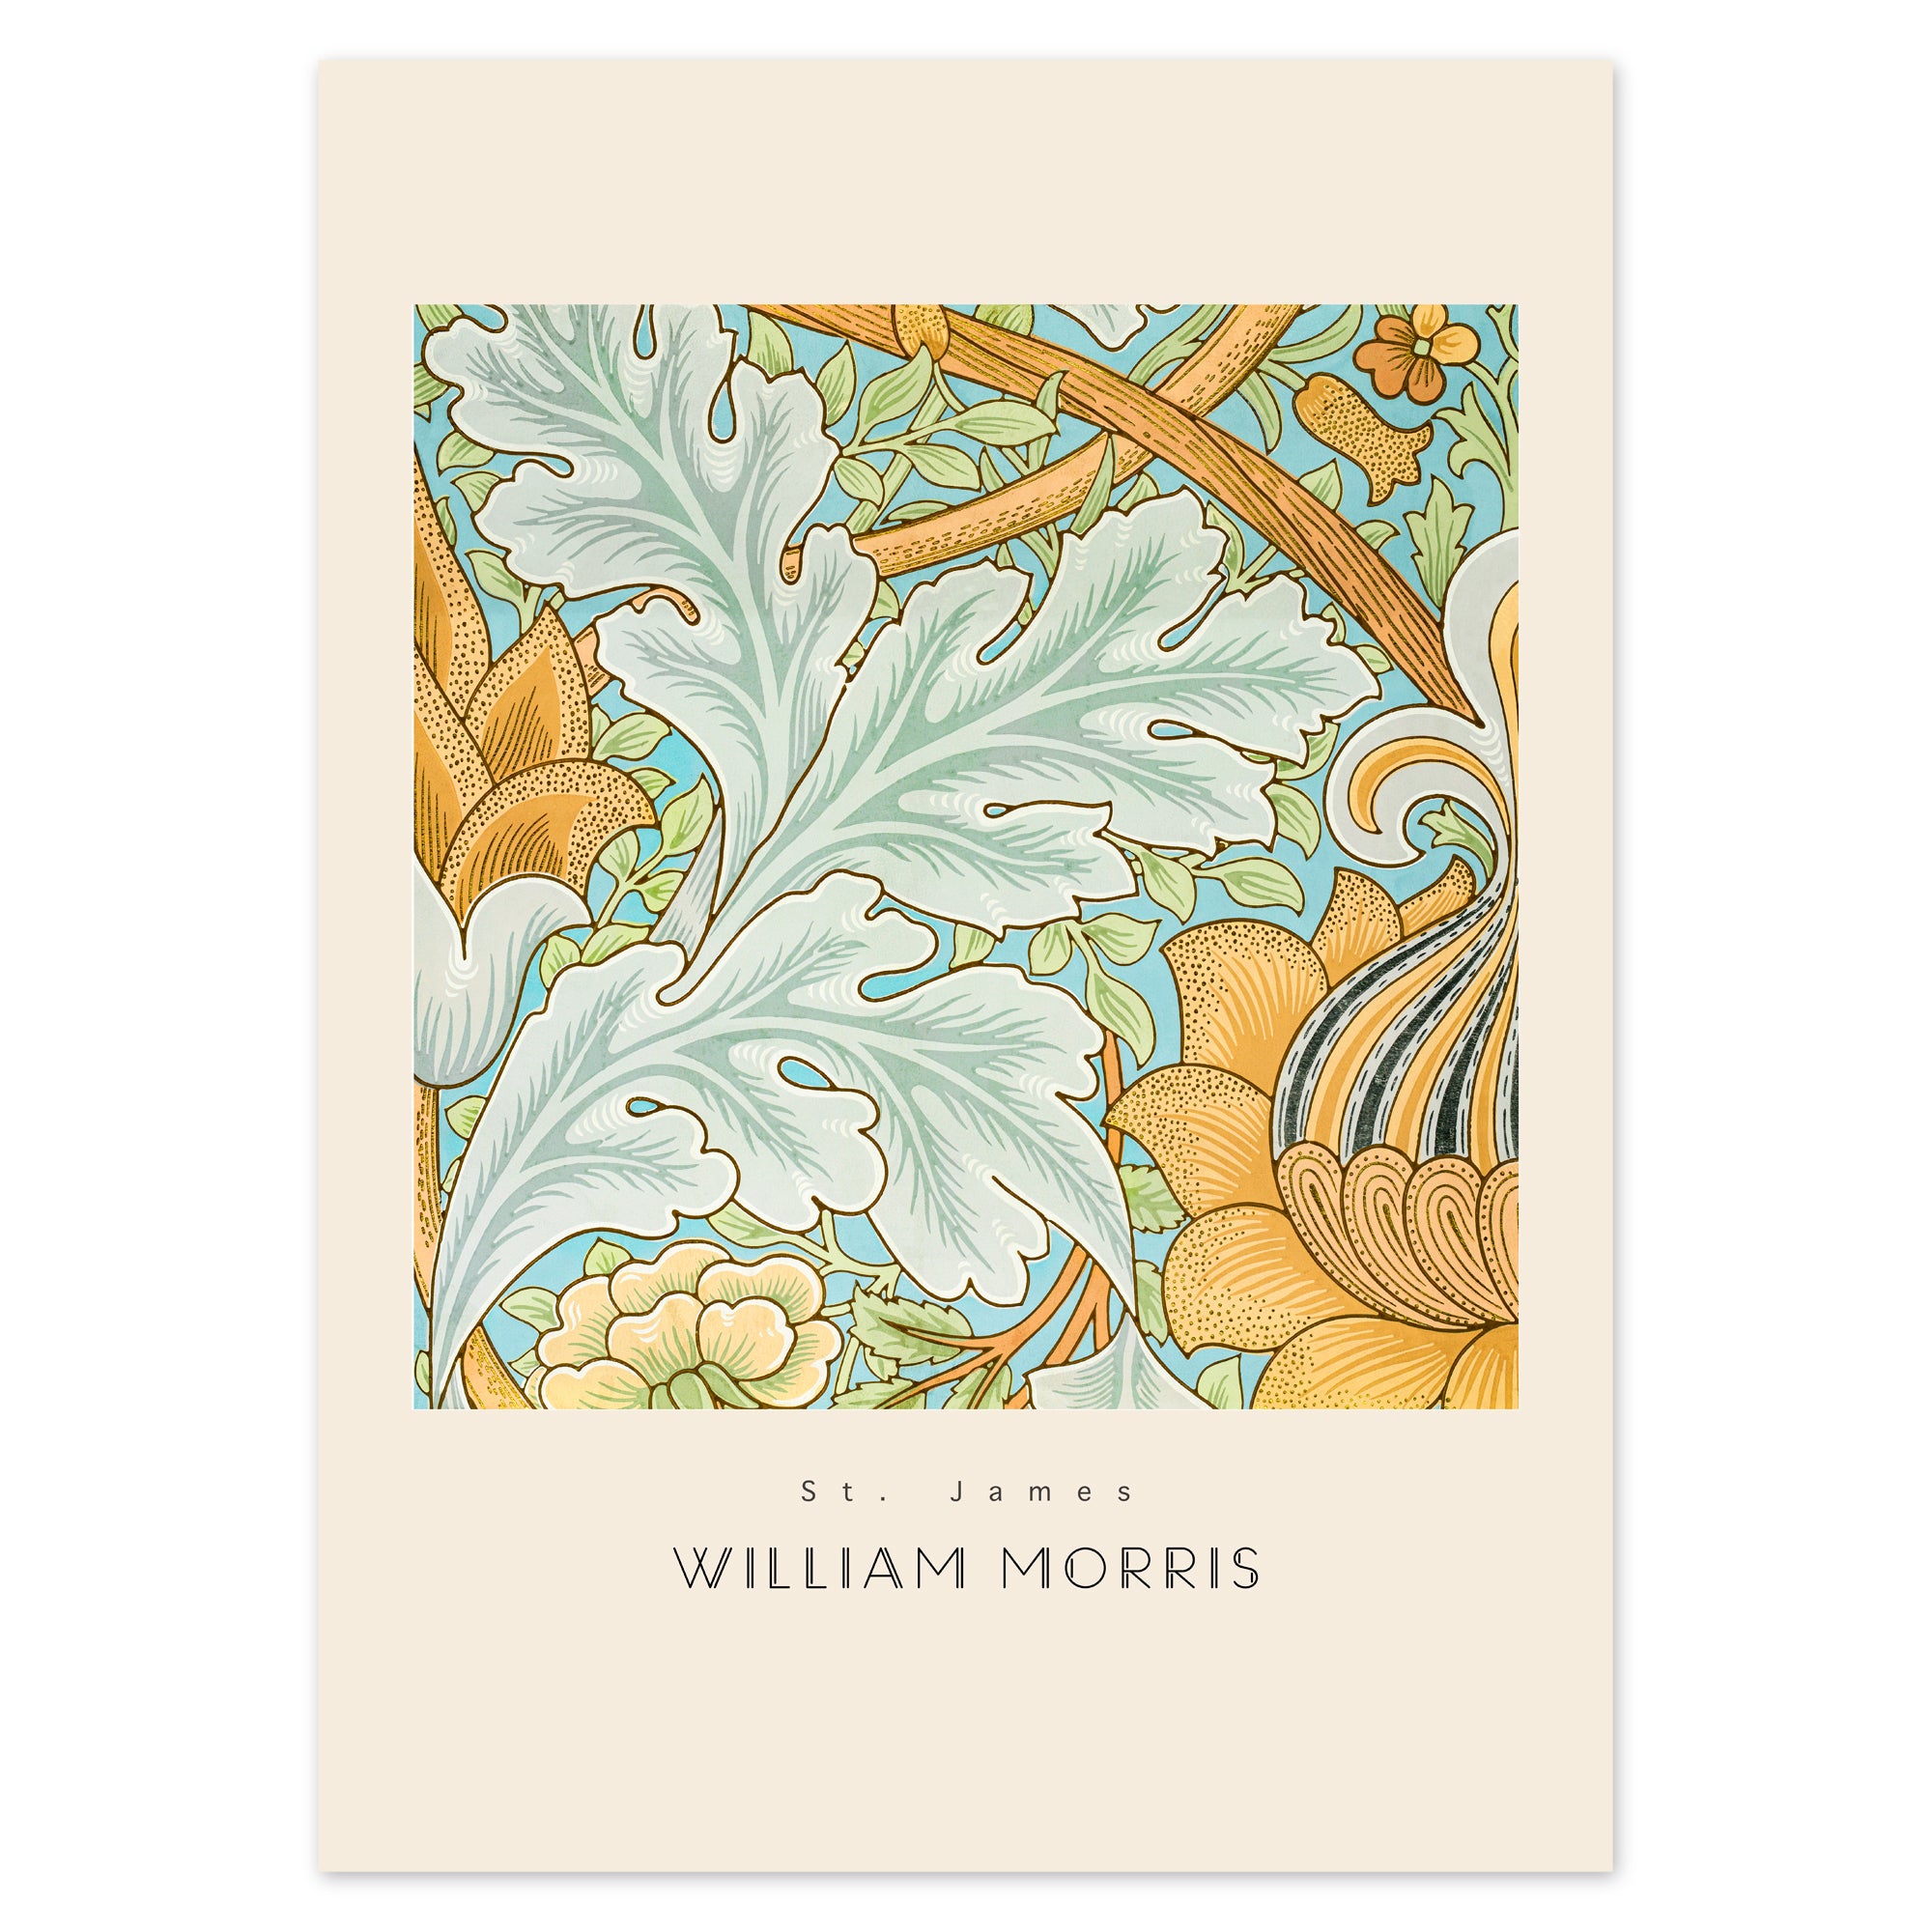 William Morris Poster - St. James